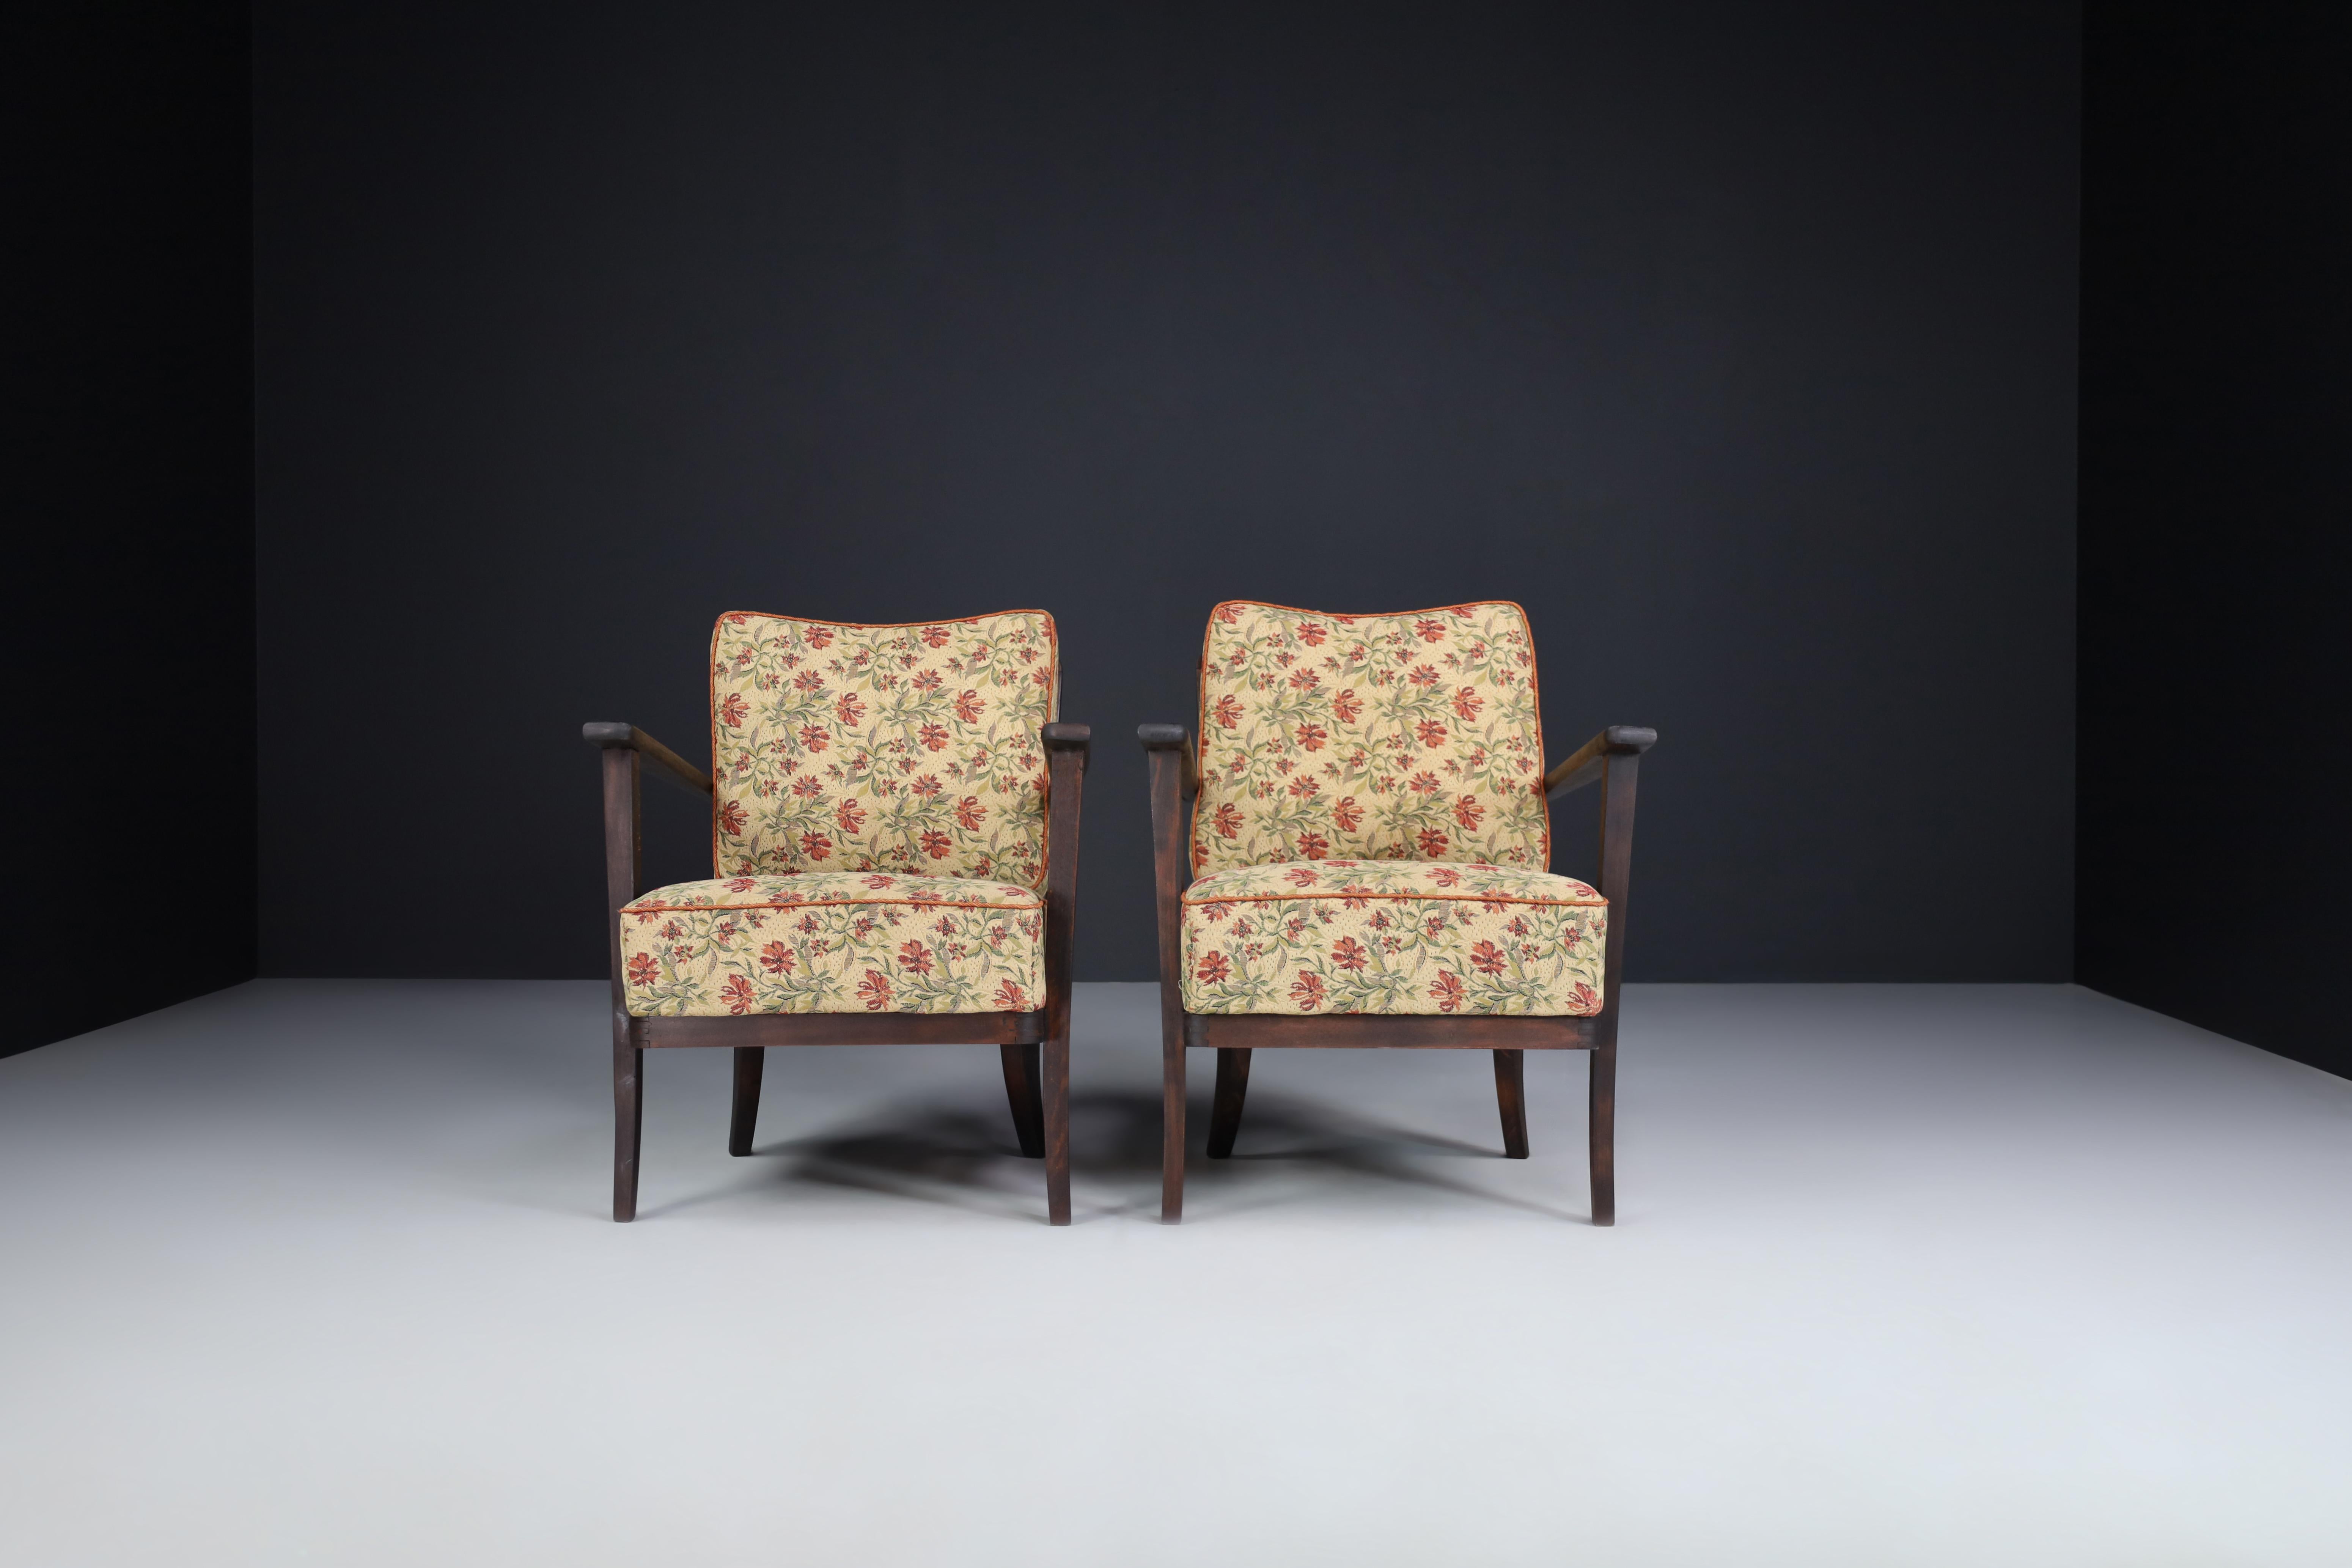 Sessel mit floraler Polsterung, Frankreich 1950er Jahre. 

Midcentury-Sessel wurden in den 1950er Jahren in Frankreich hergestellt und entworfen. Diese Sessel haben die Originalpolsterung aus geblümtem Stoff und ein schönes, elegantes Holzgestell.